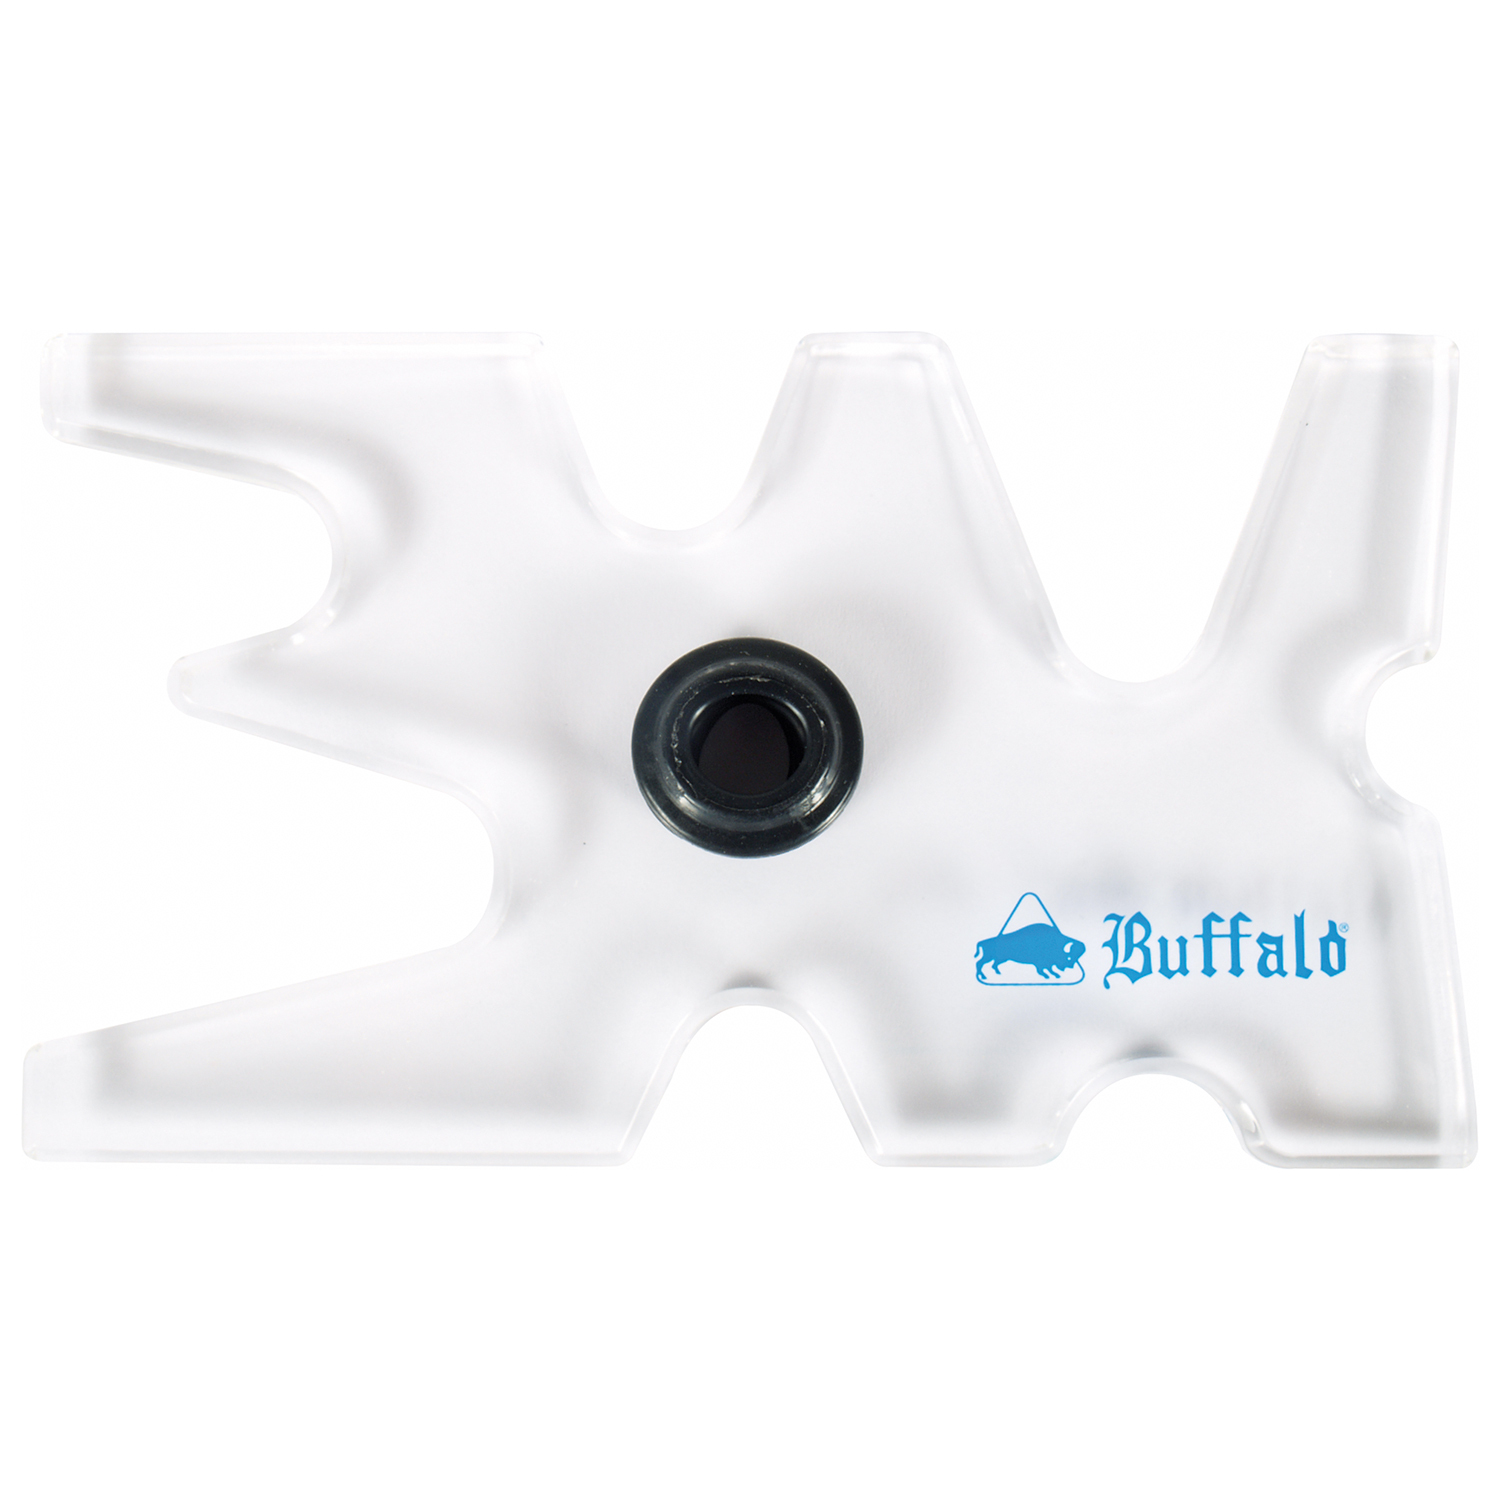 Buffalo Buffalo keu steun eland acrylic